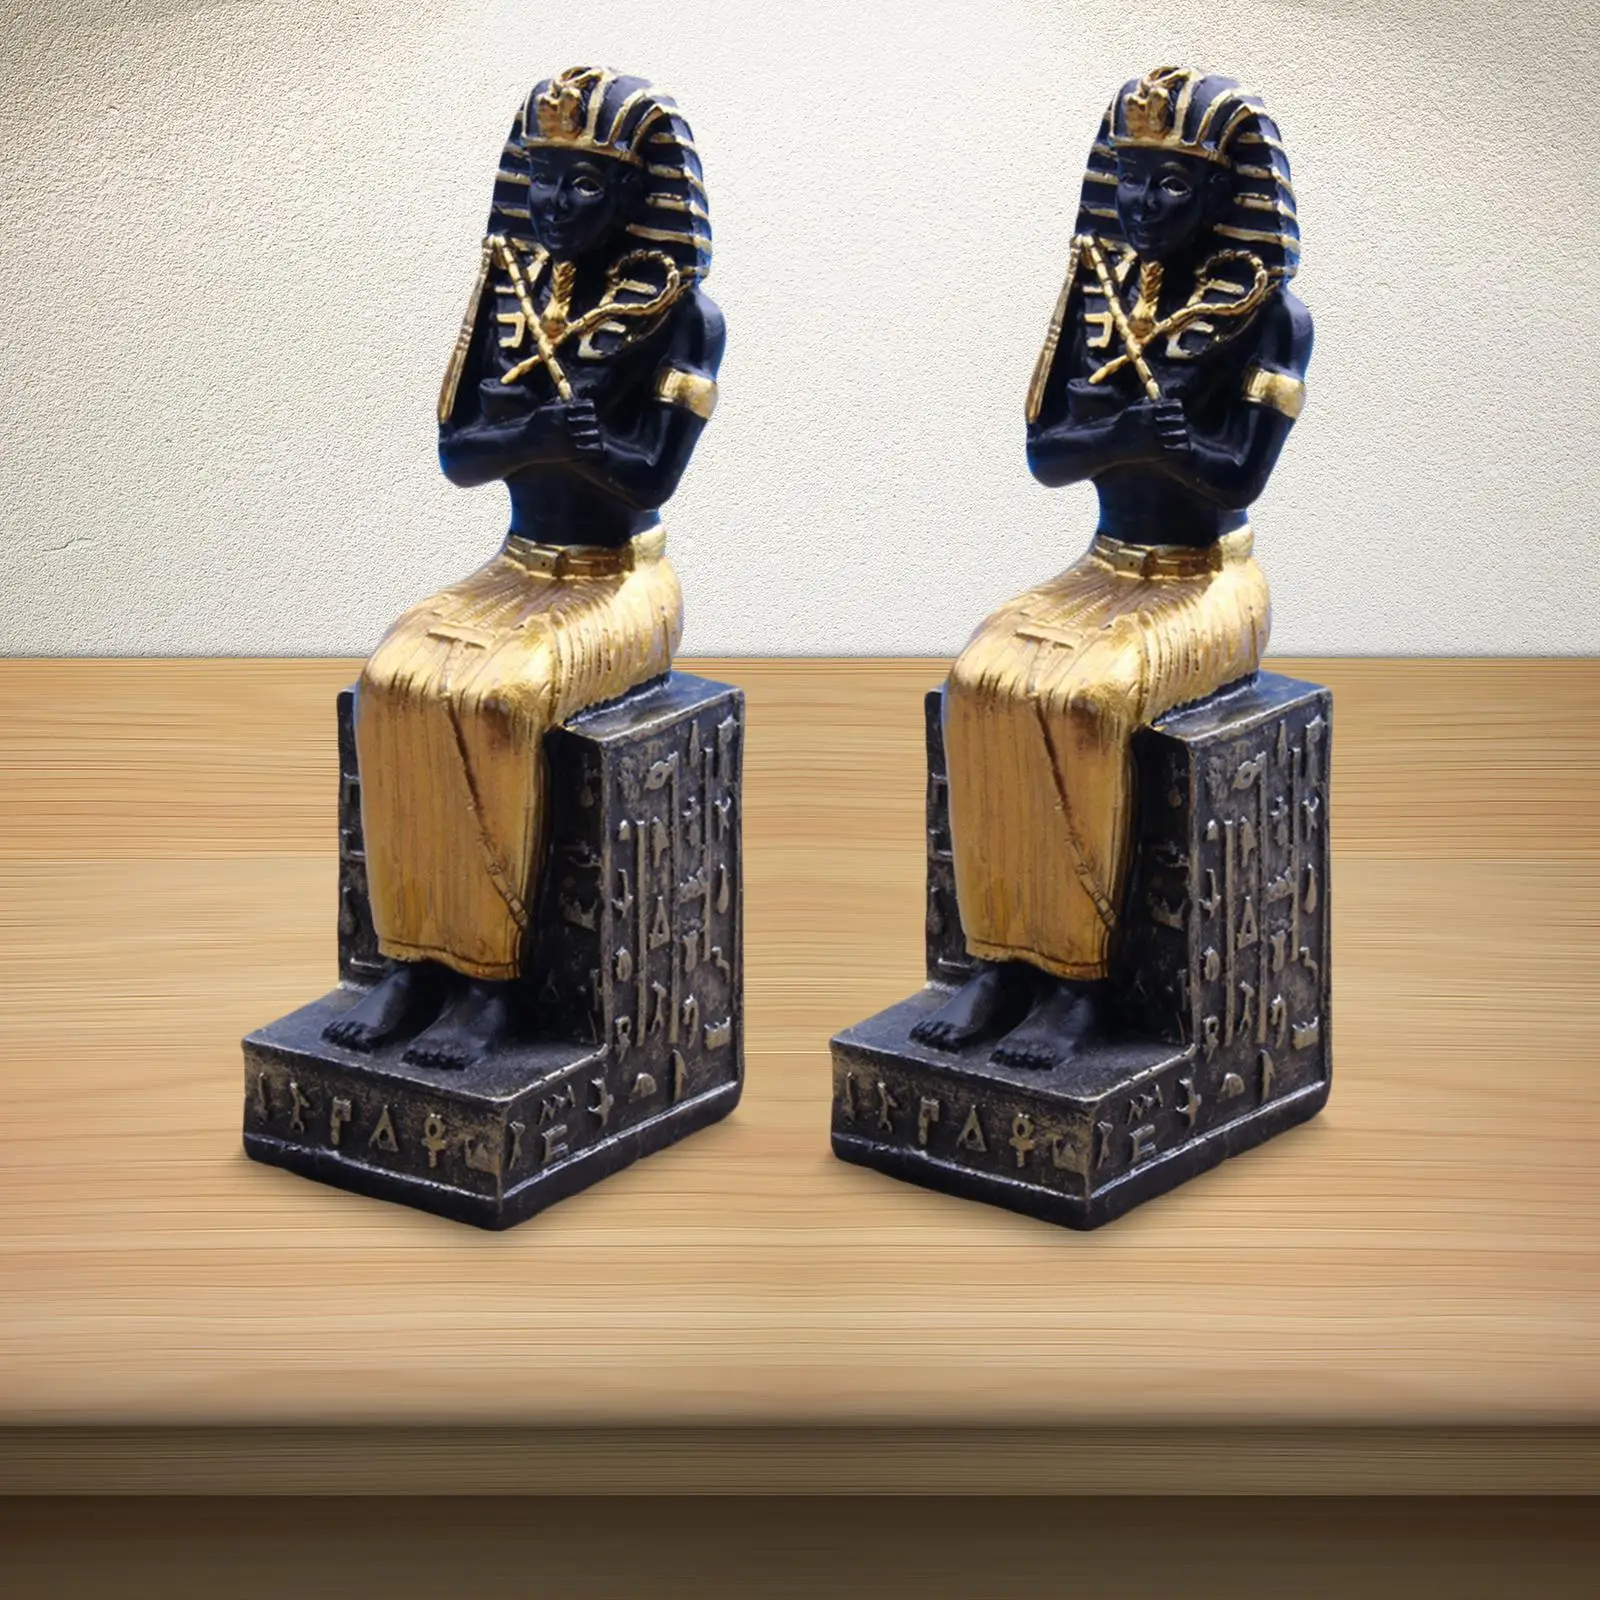 2 Pieces Egyptian Pharaoh Figurine Sculpture Collectible Artware for Desktop